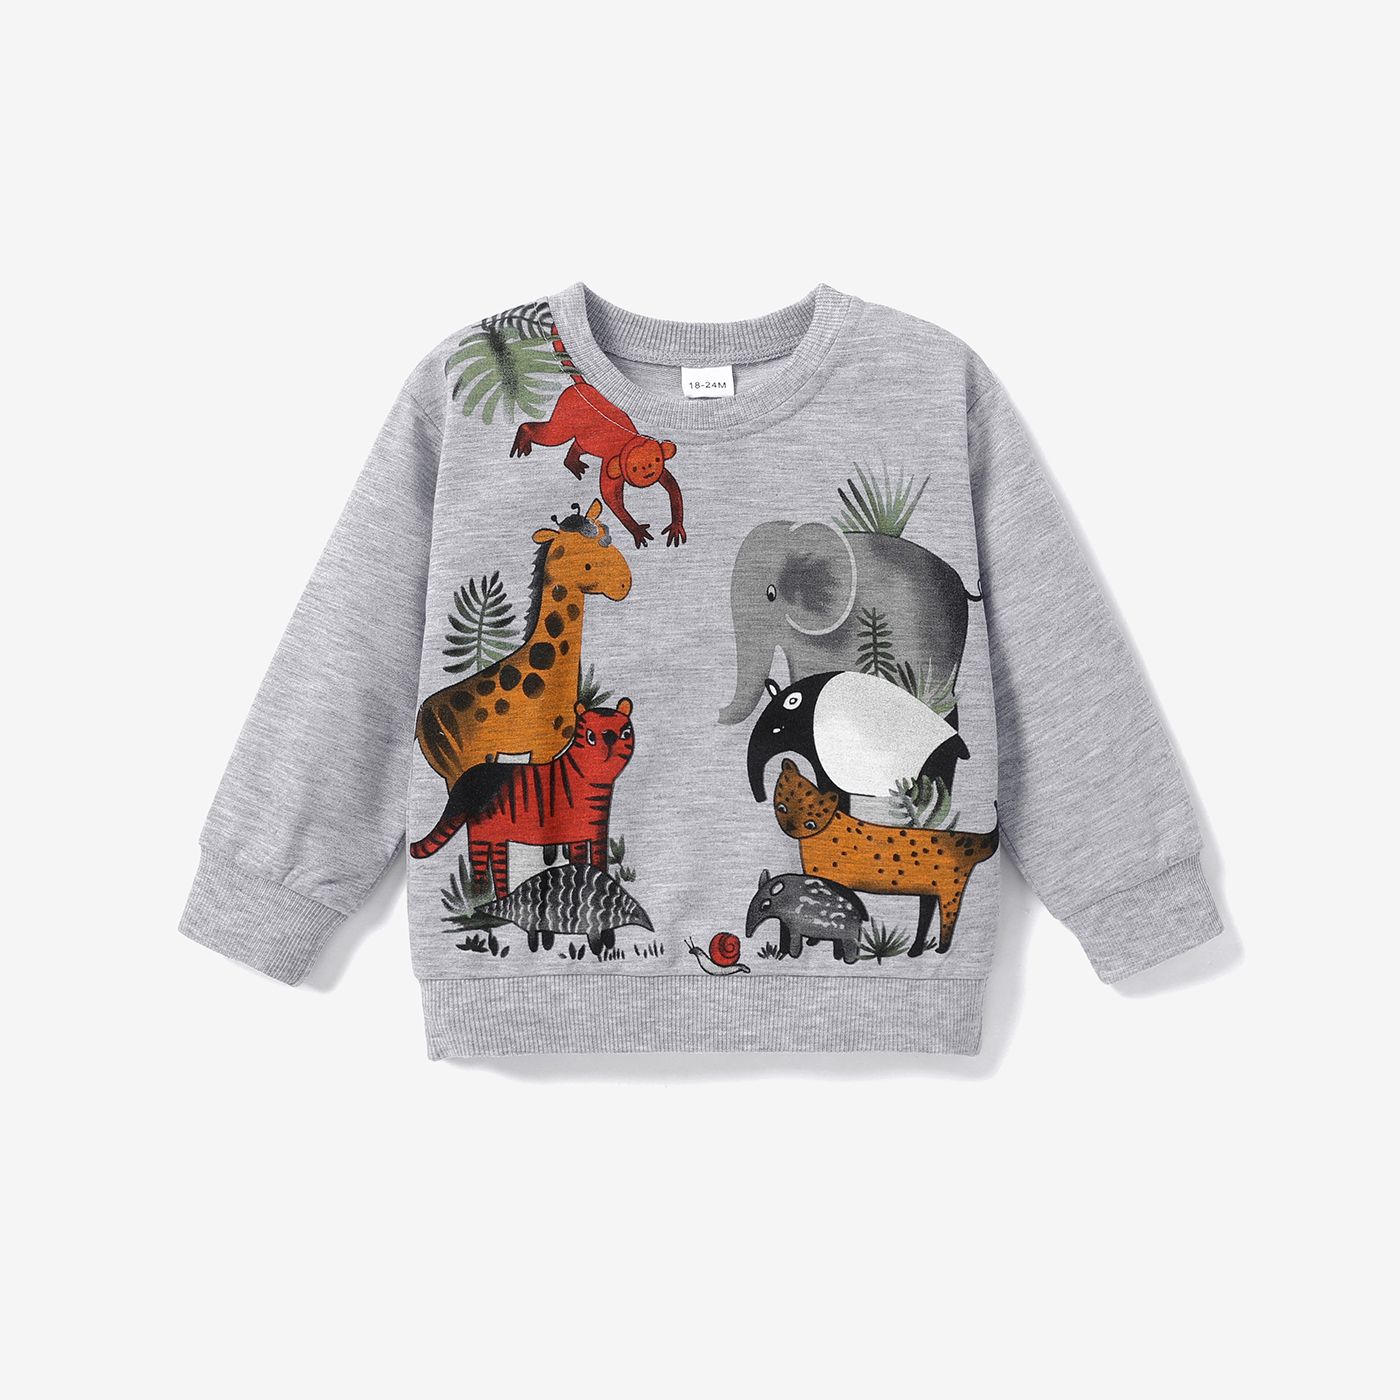 Toddler Boy Playful Animal Print Pullover Sweatshirt